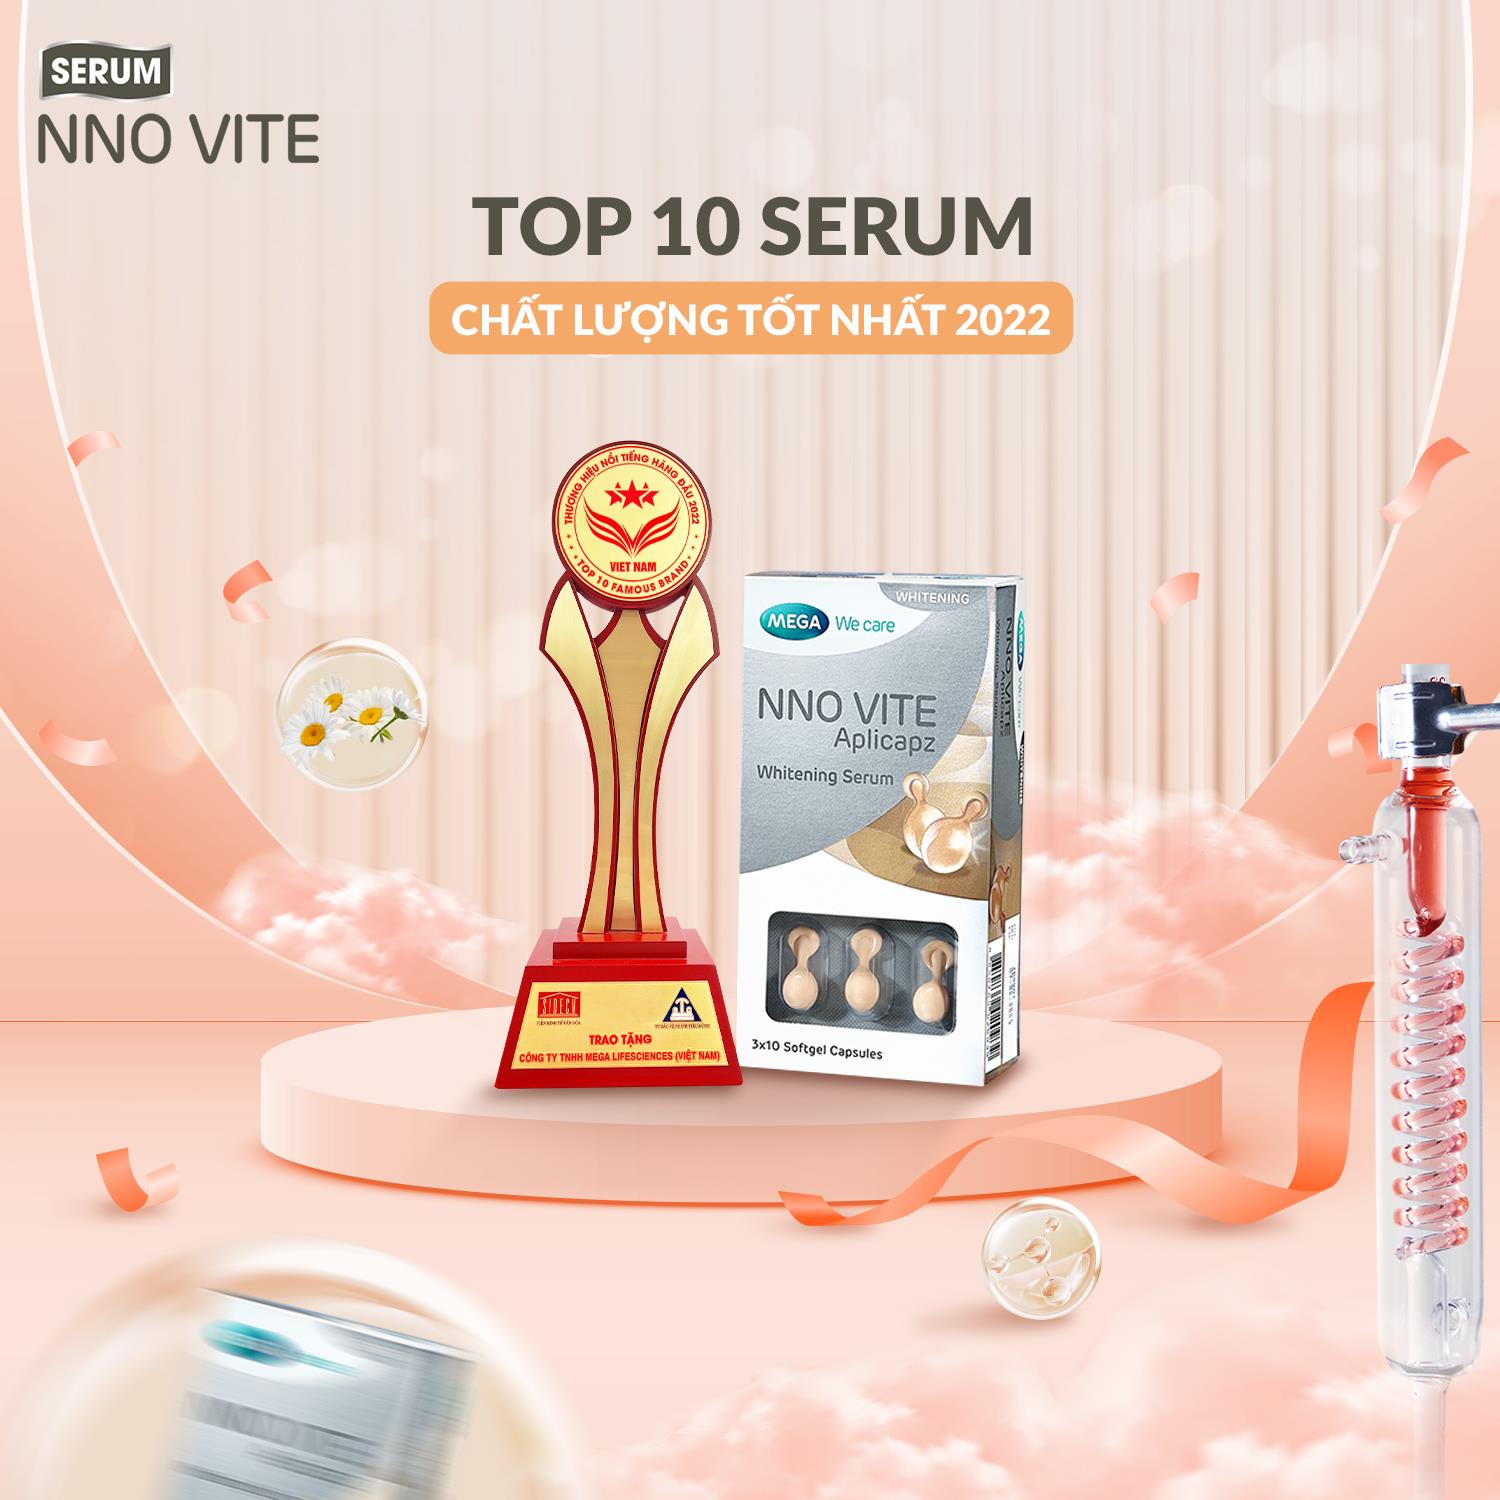 Serum dưỡng trắng da được bình chọn top 10 sản phẩm chất lượng tốt của năm, nàng nhất định nên thử! - Ảnh 5.